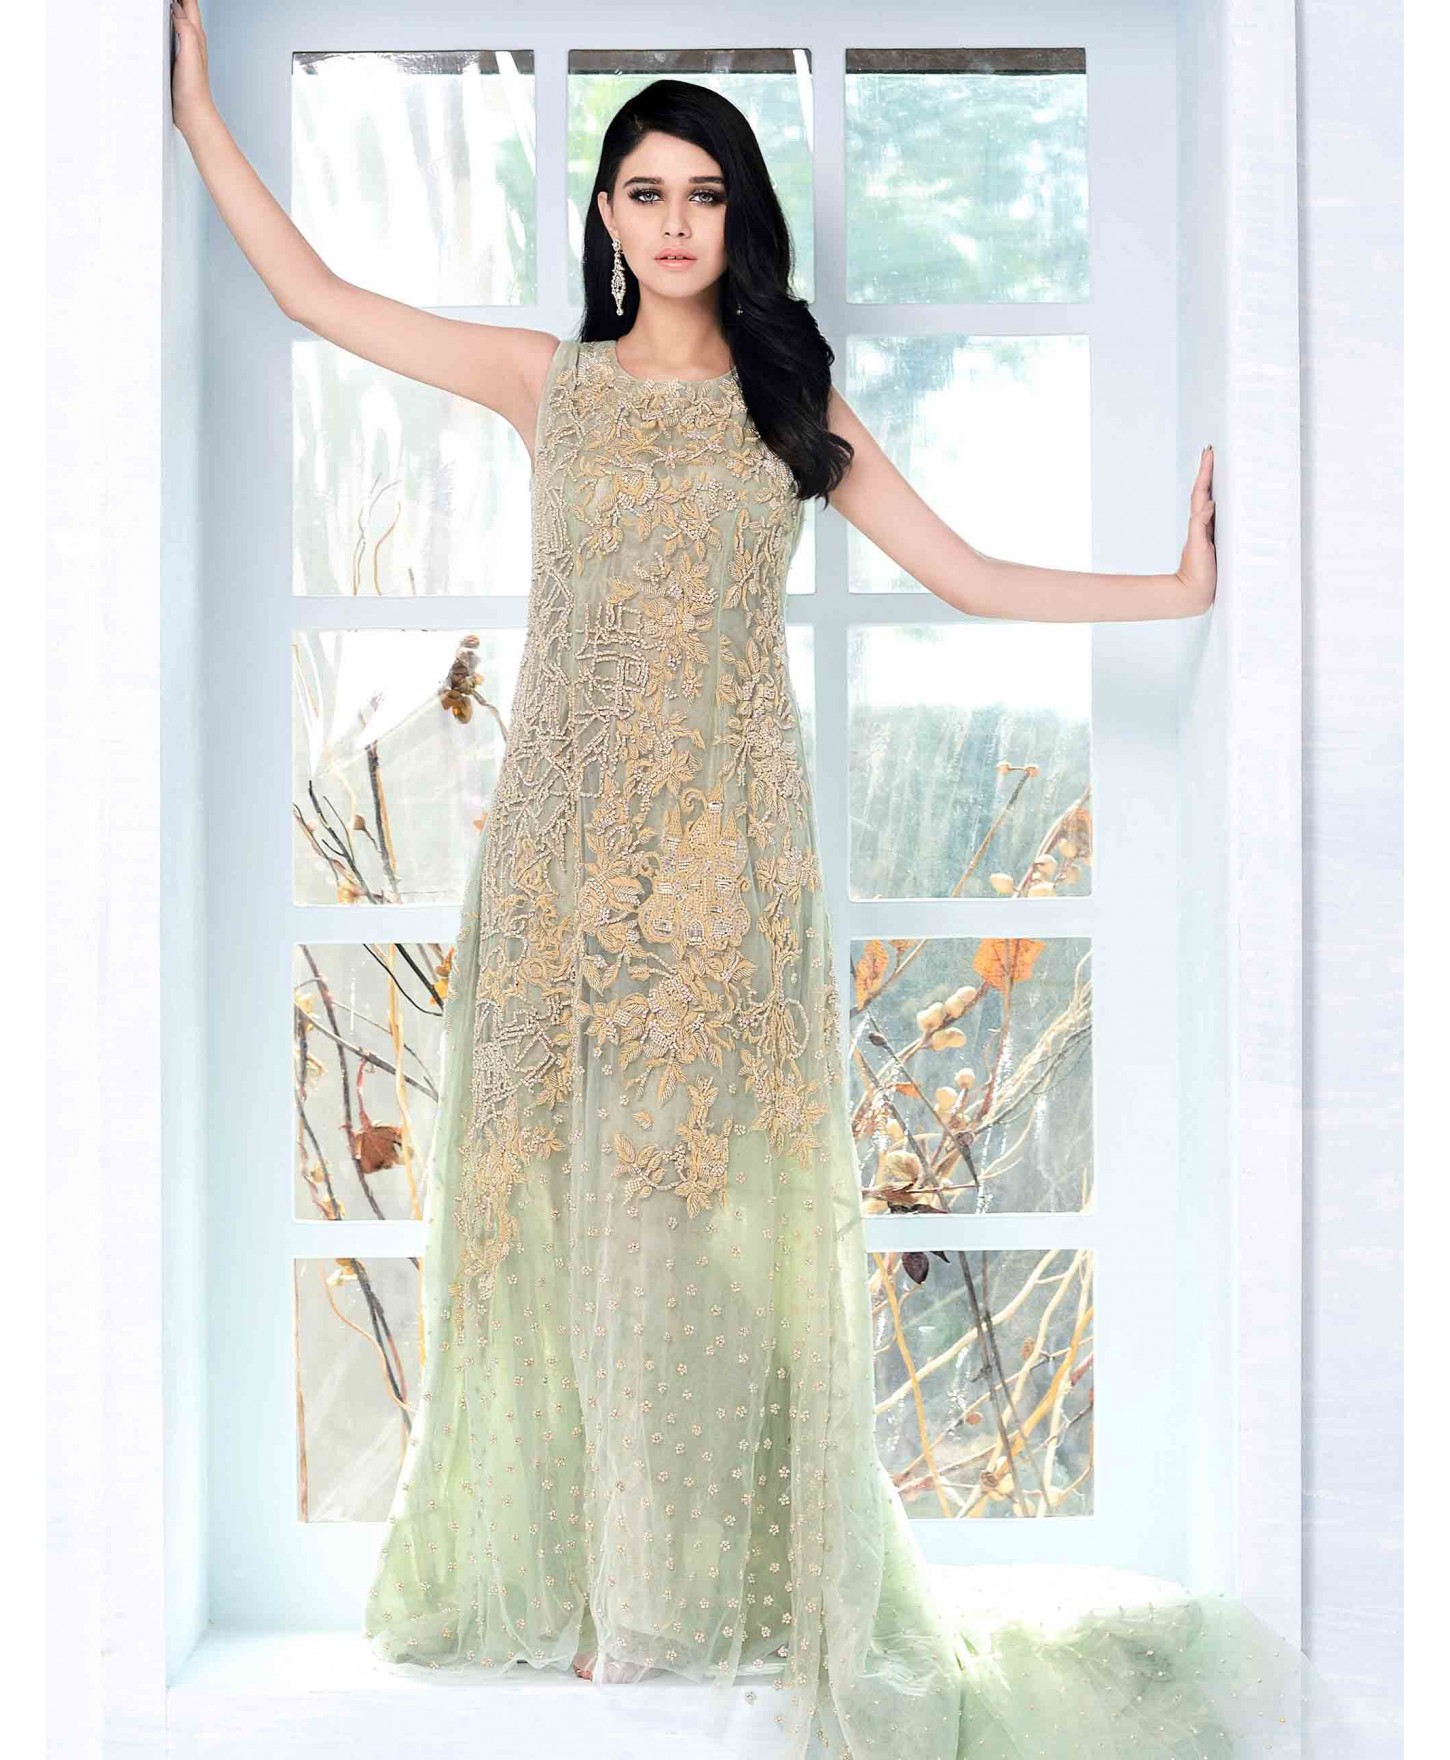 Beautiful and ravishing mint green Pakistani wedding dress by Crates by Pasho